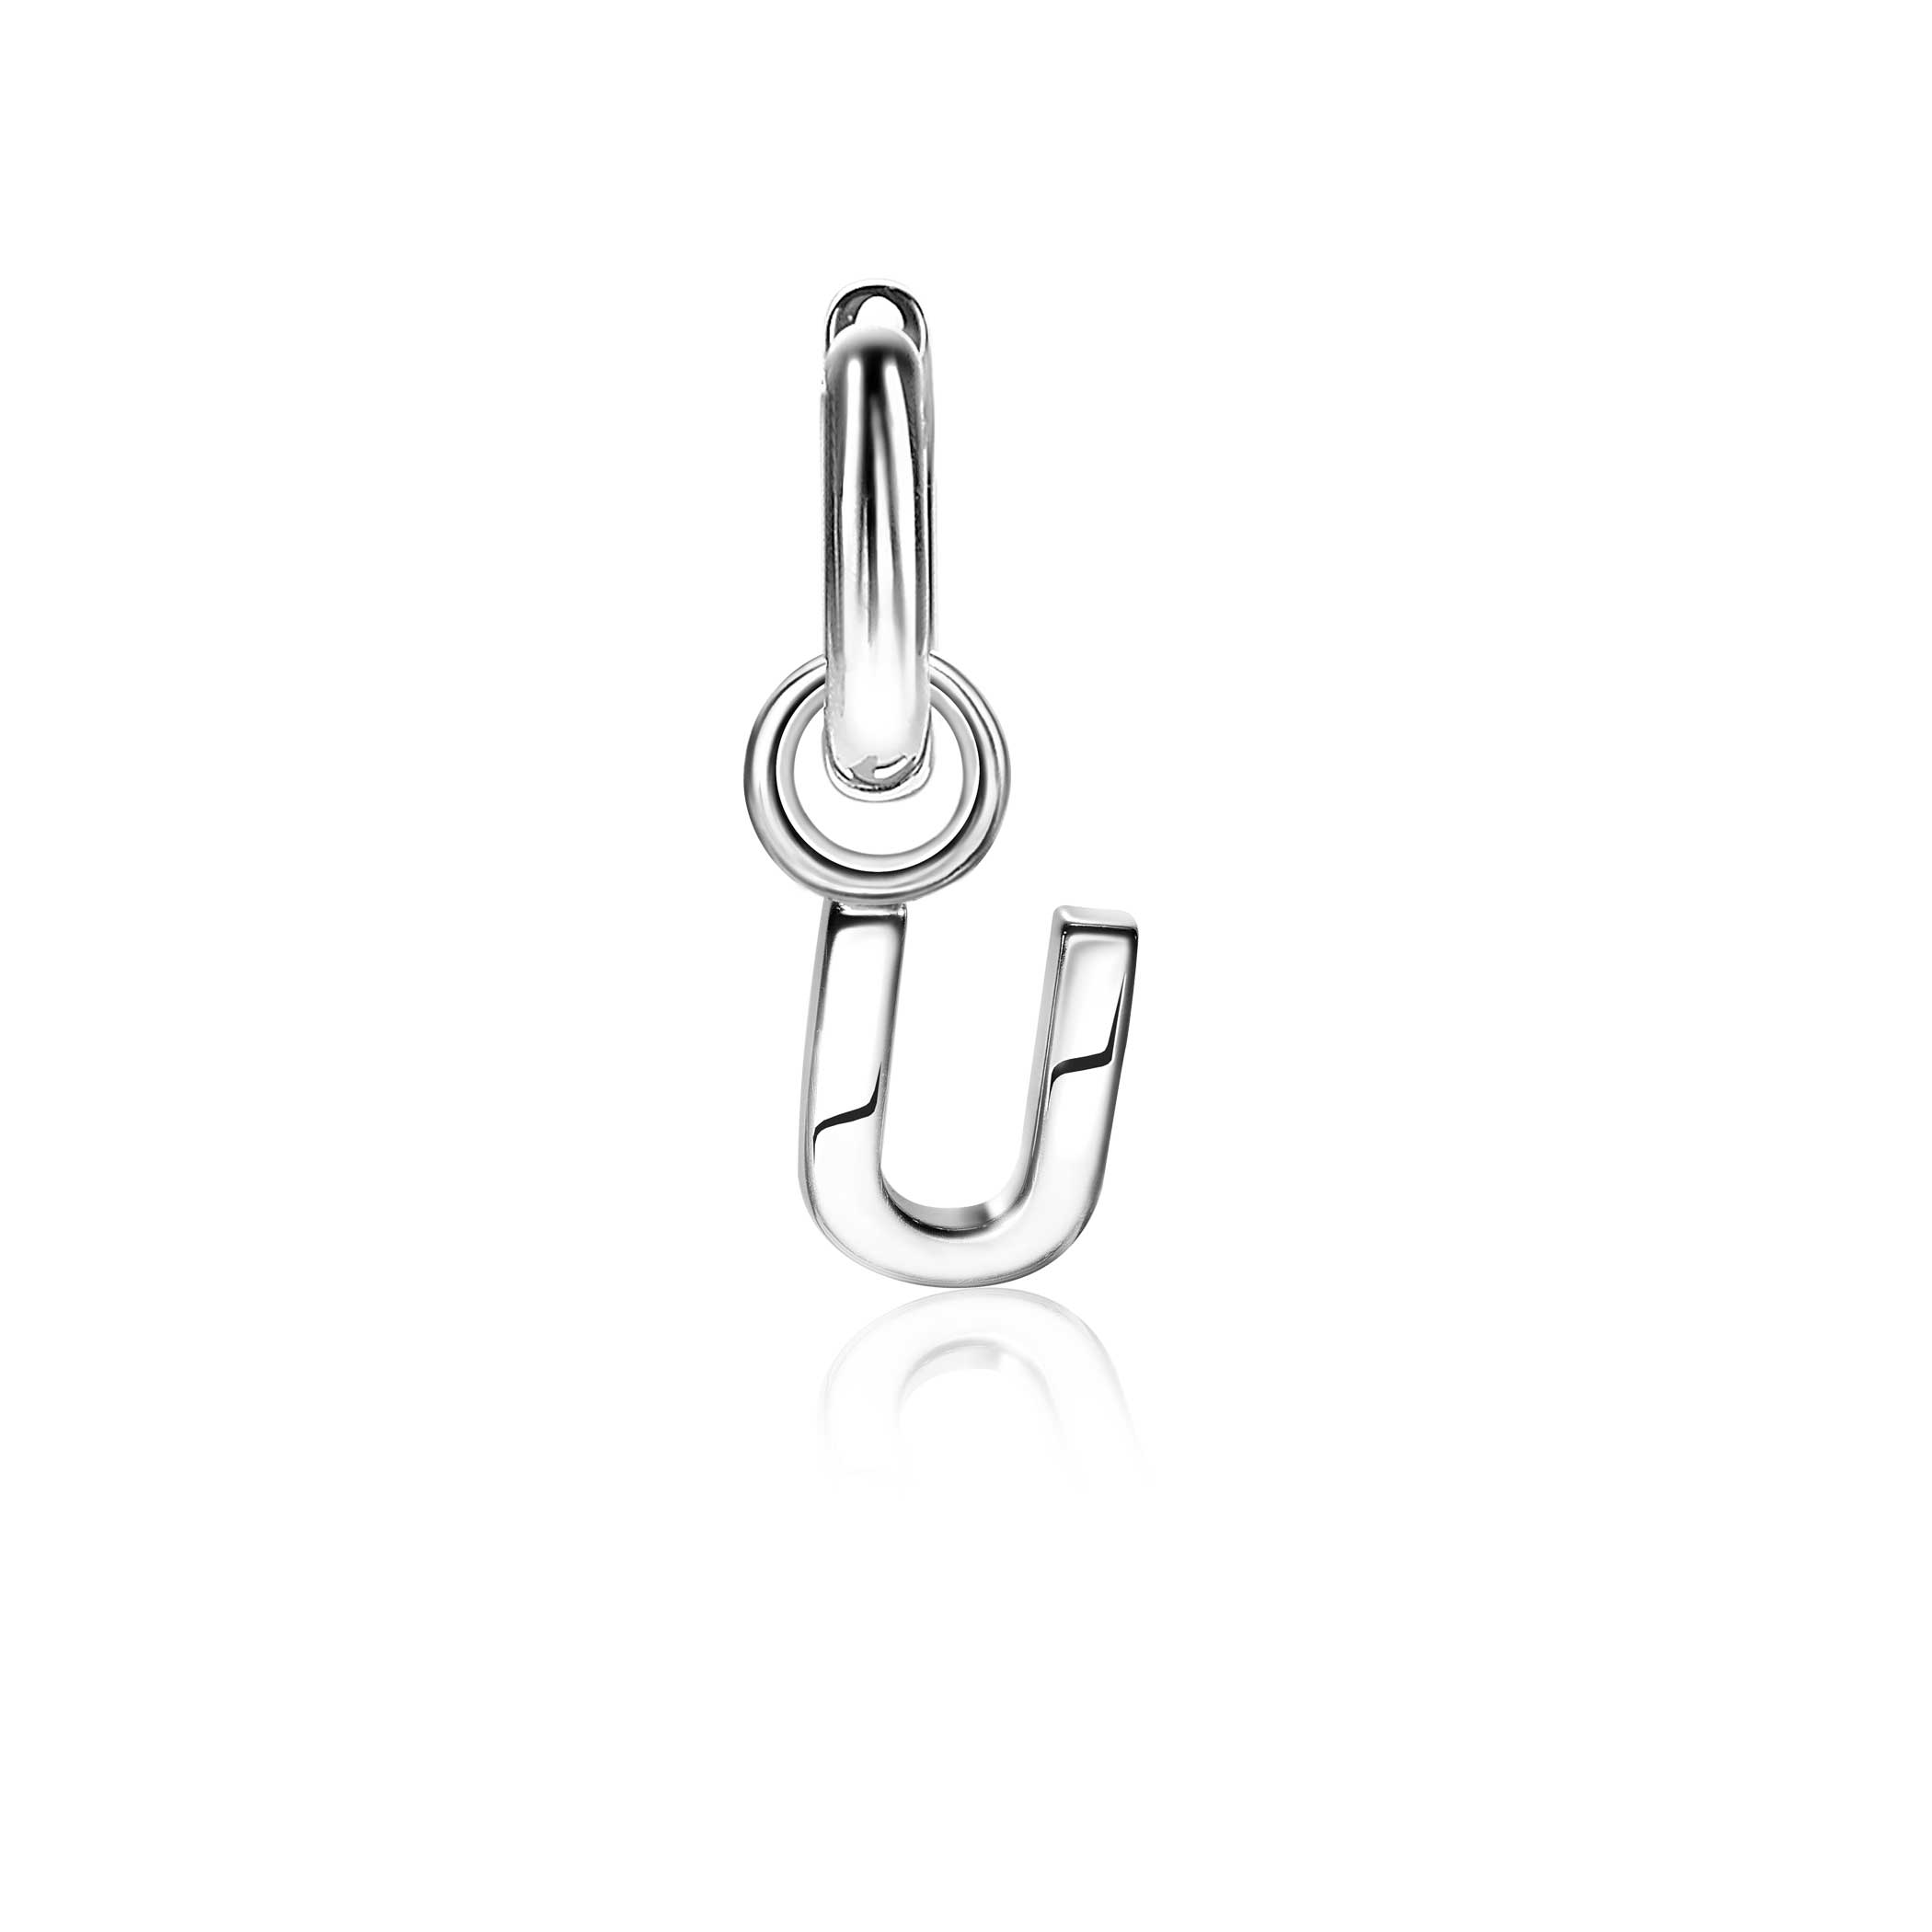 ZINZI Sterling Silver Letter Earrings Pendant U price per piece ZICH2144U (excl. hoop earrings)